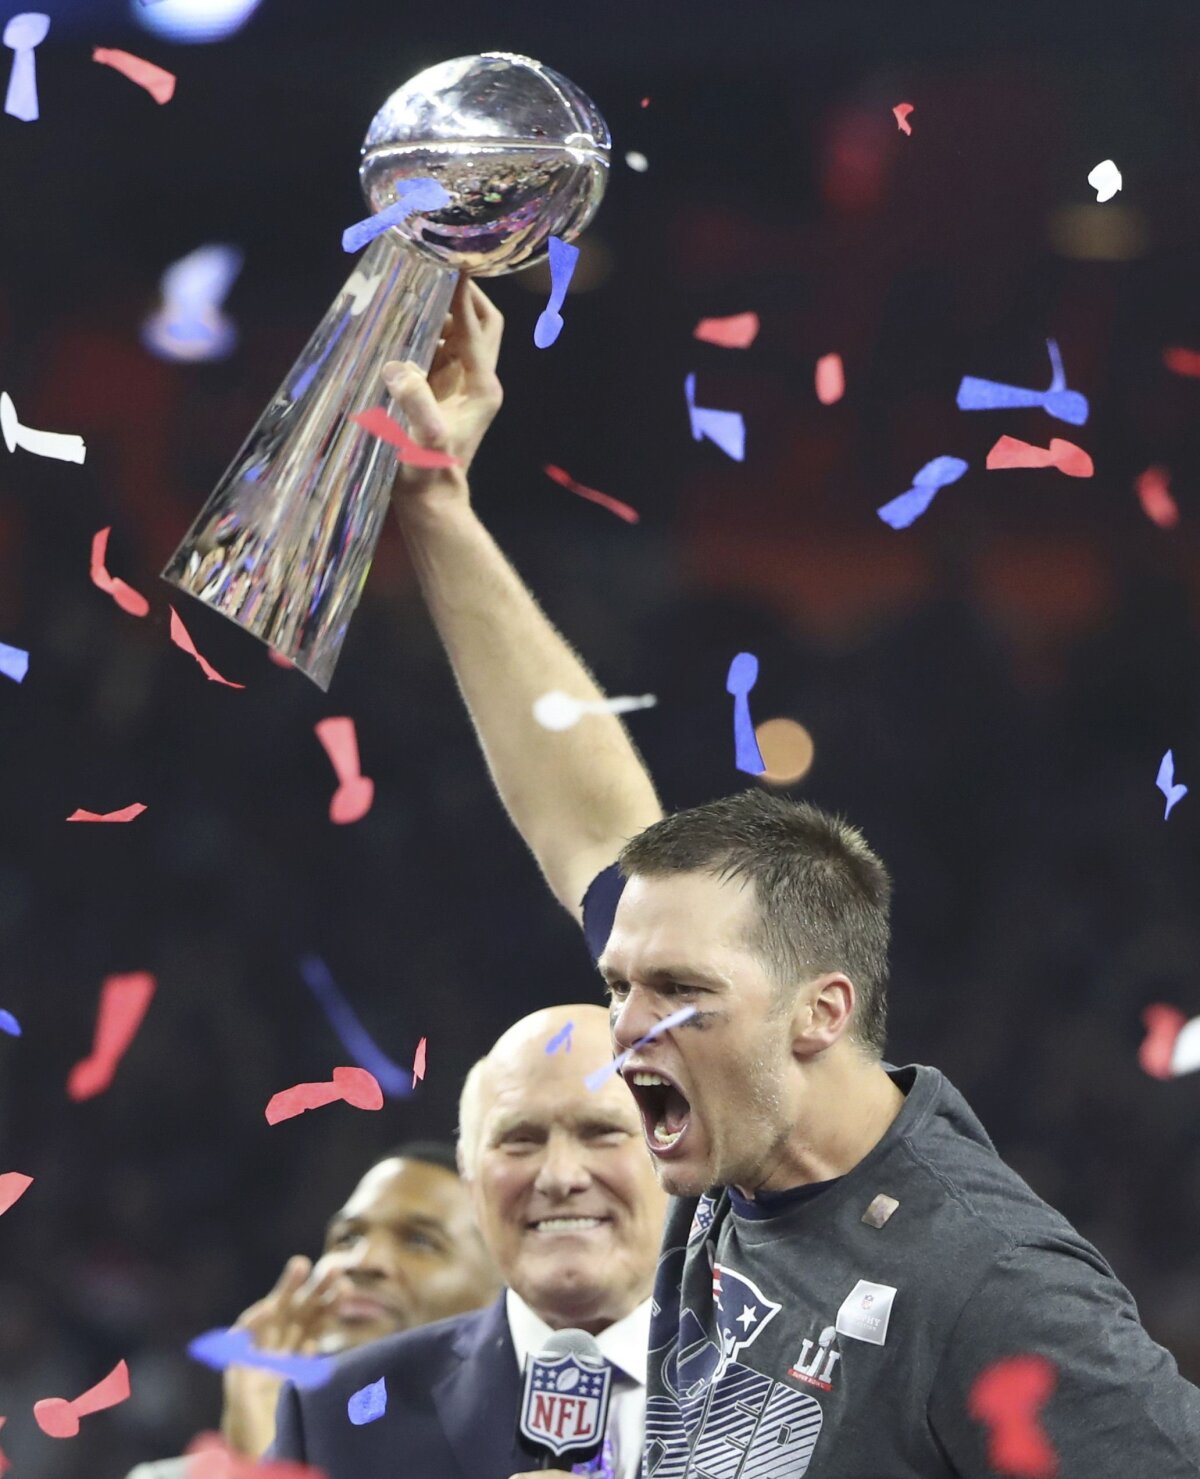 FOTO MisterAmerica » Tom Brady a devenit eroul american după toate standardele: are cinci titluri de campion NFL